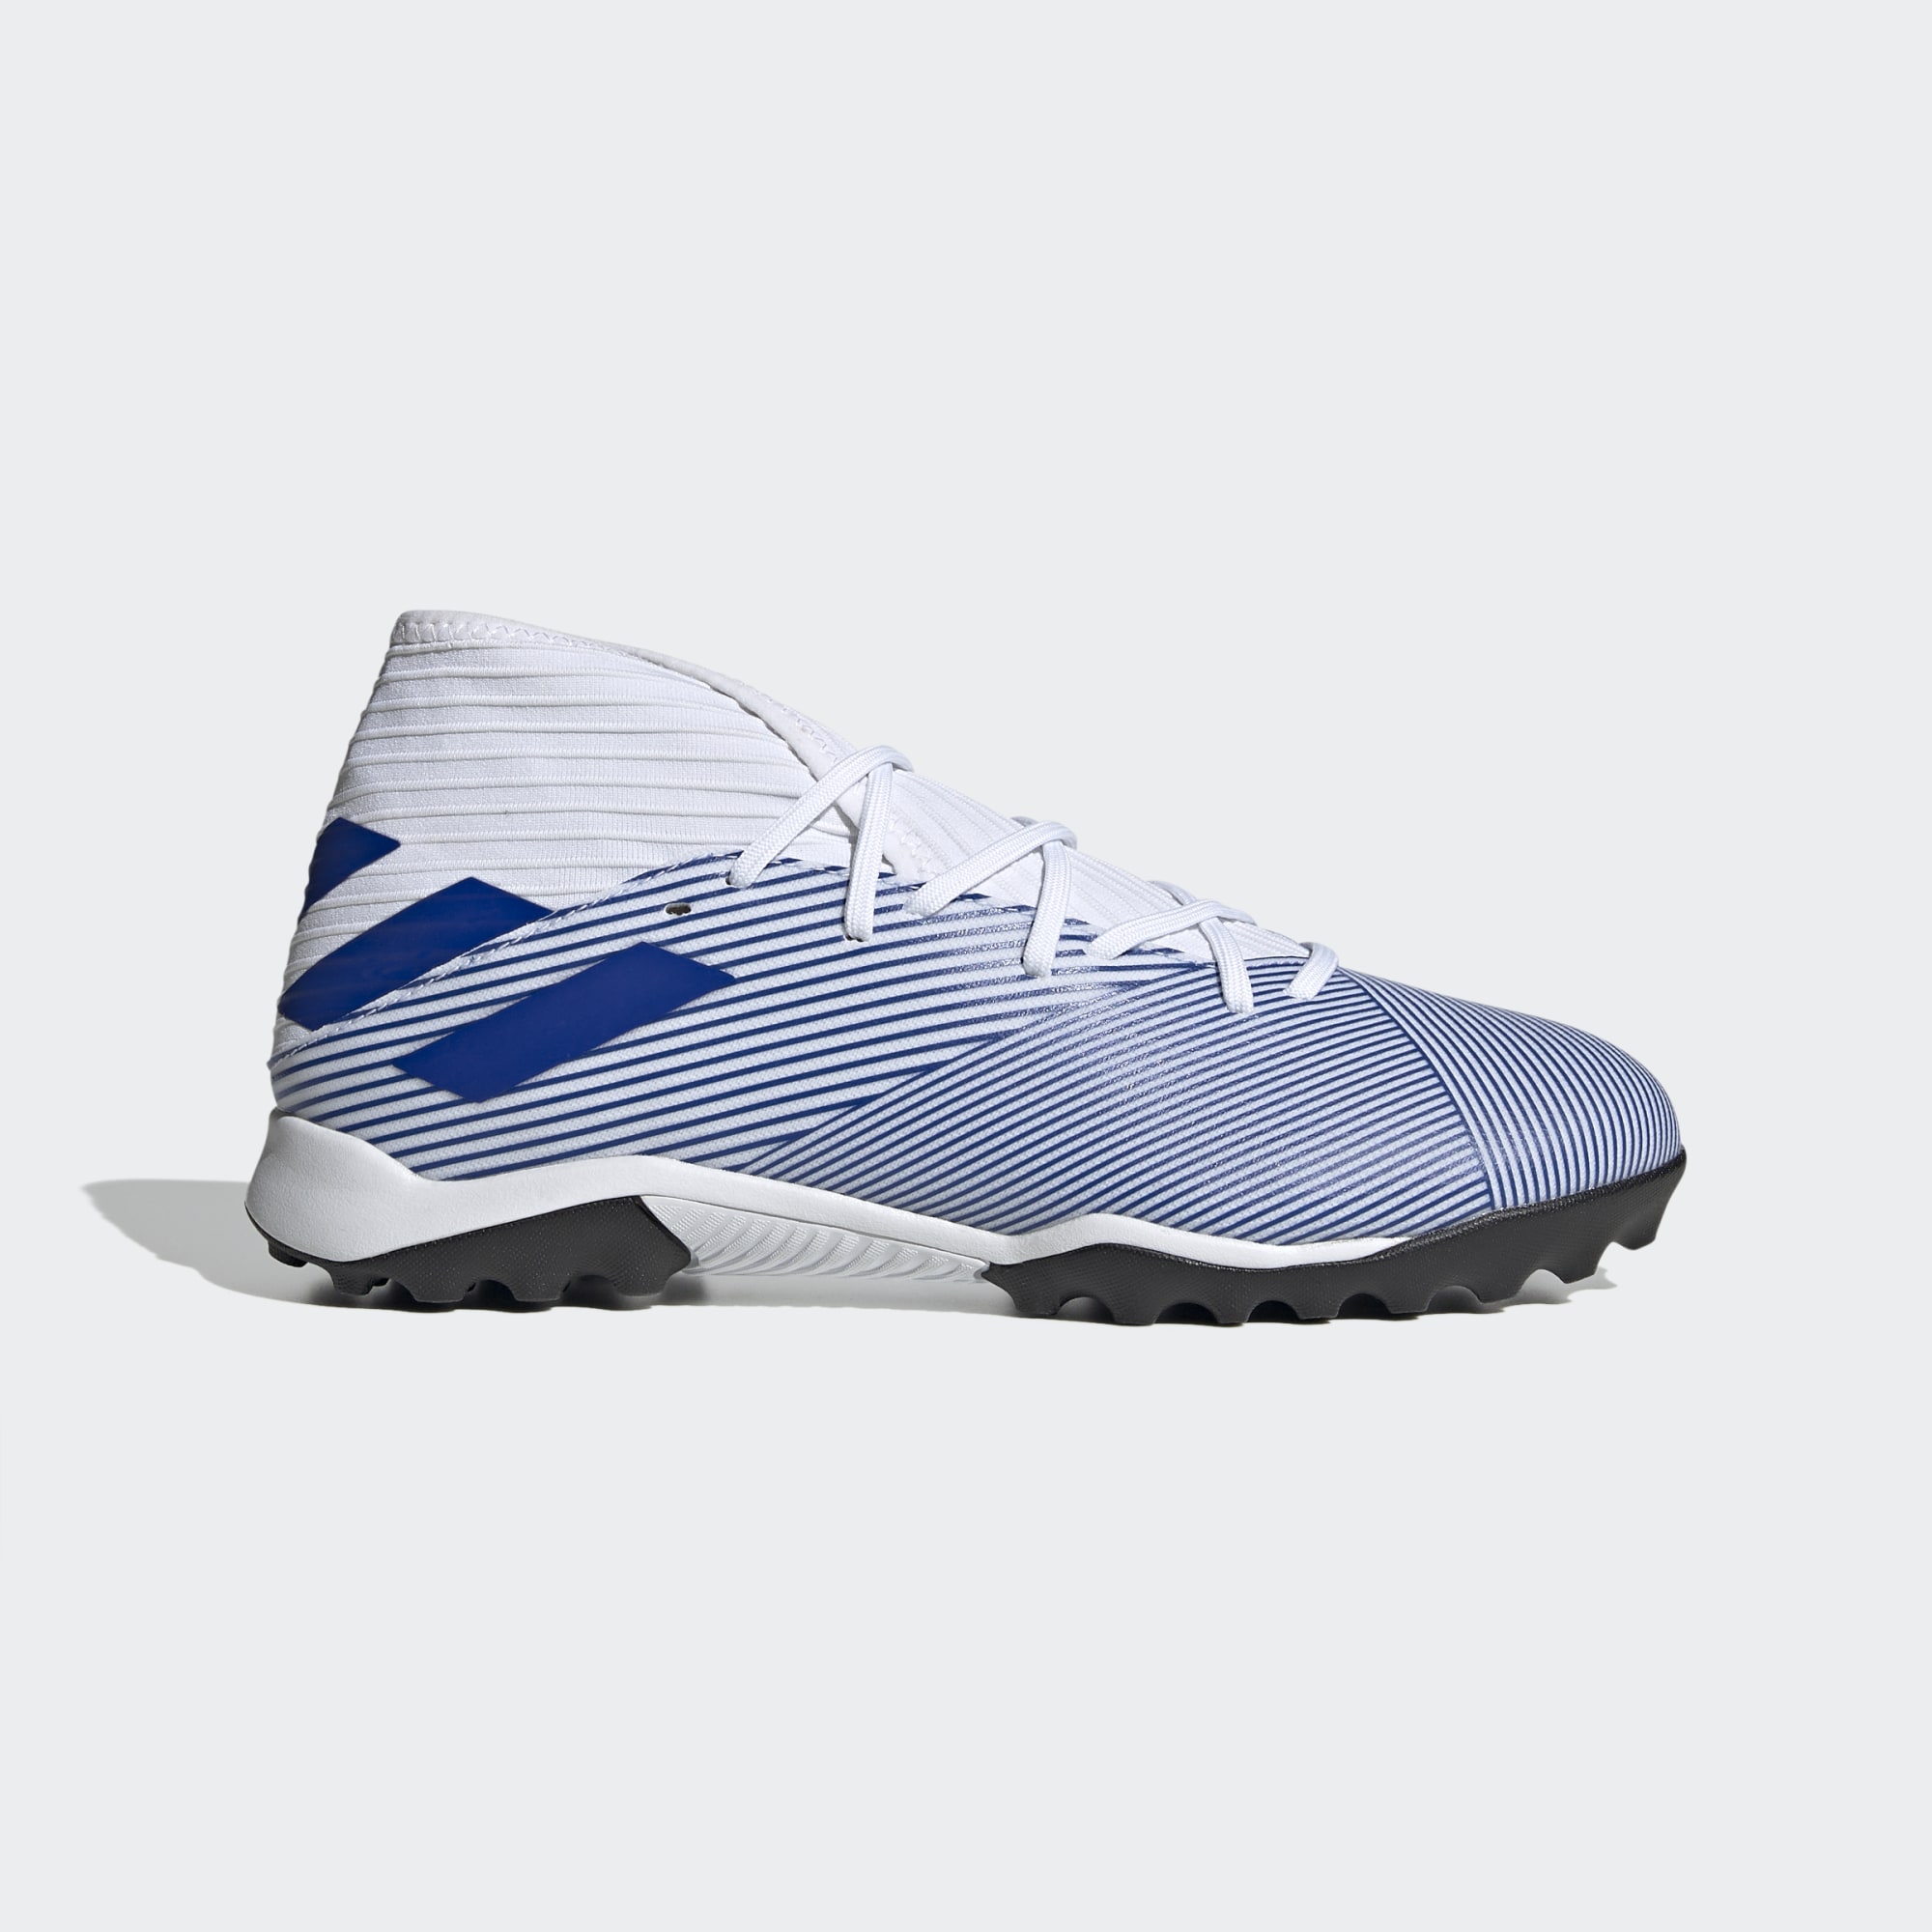 Giày sân cỏ nhân tạo Adidas Nemeziz 19.3 với thiết kế đẹp mắt